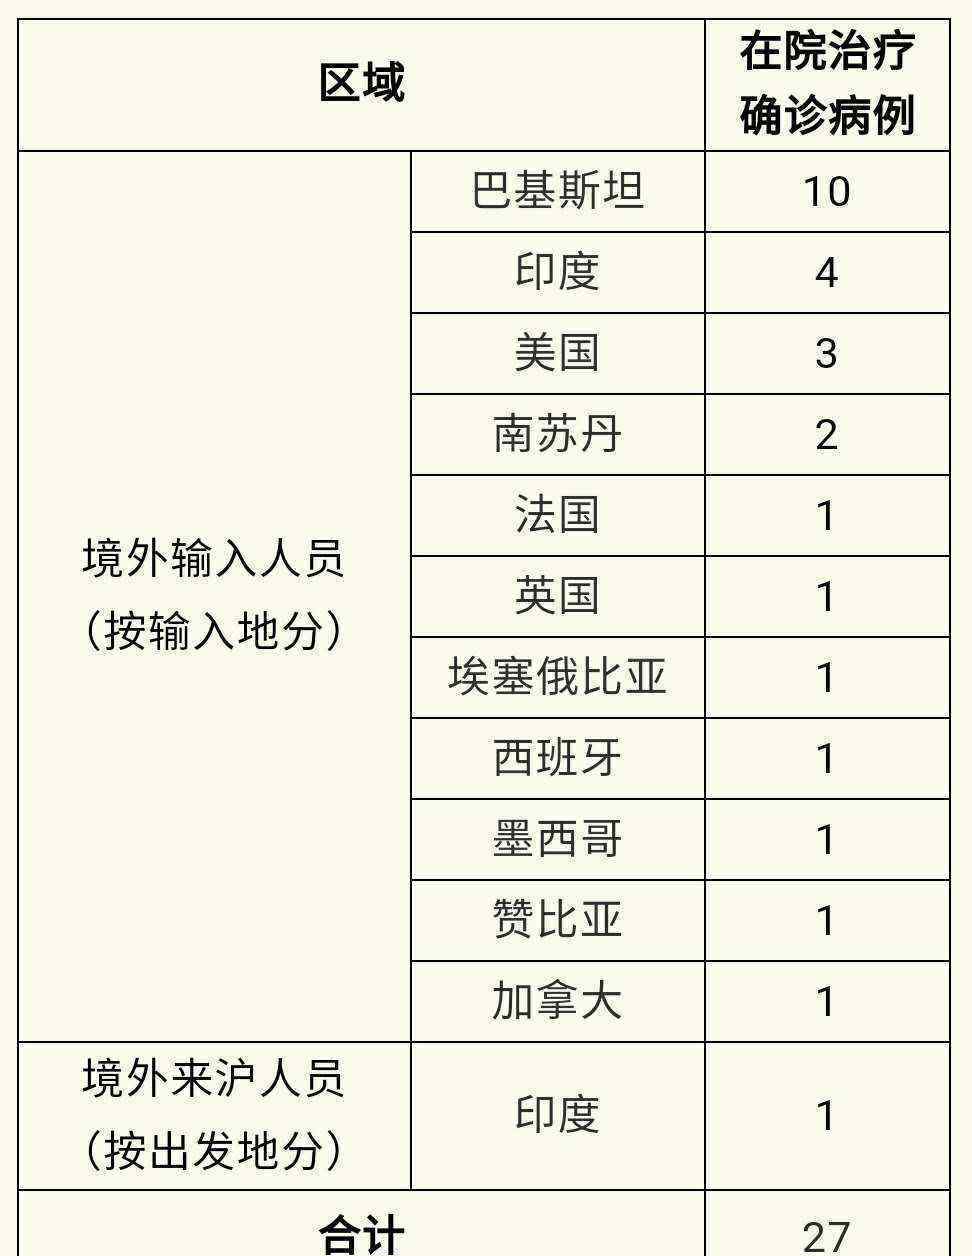 上海3日无新增本地新冠肺炎确诊病例 新增境外输入1例